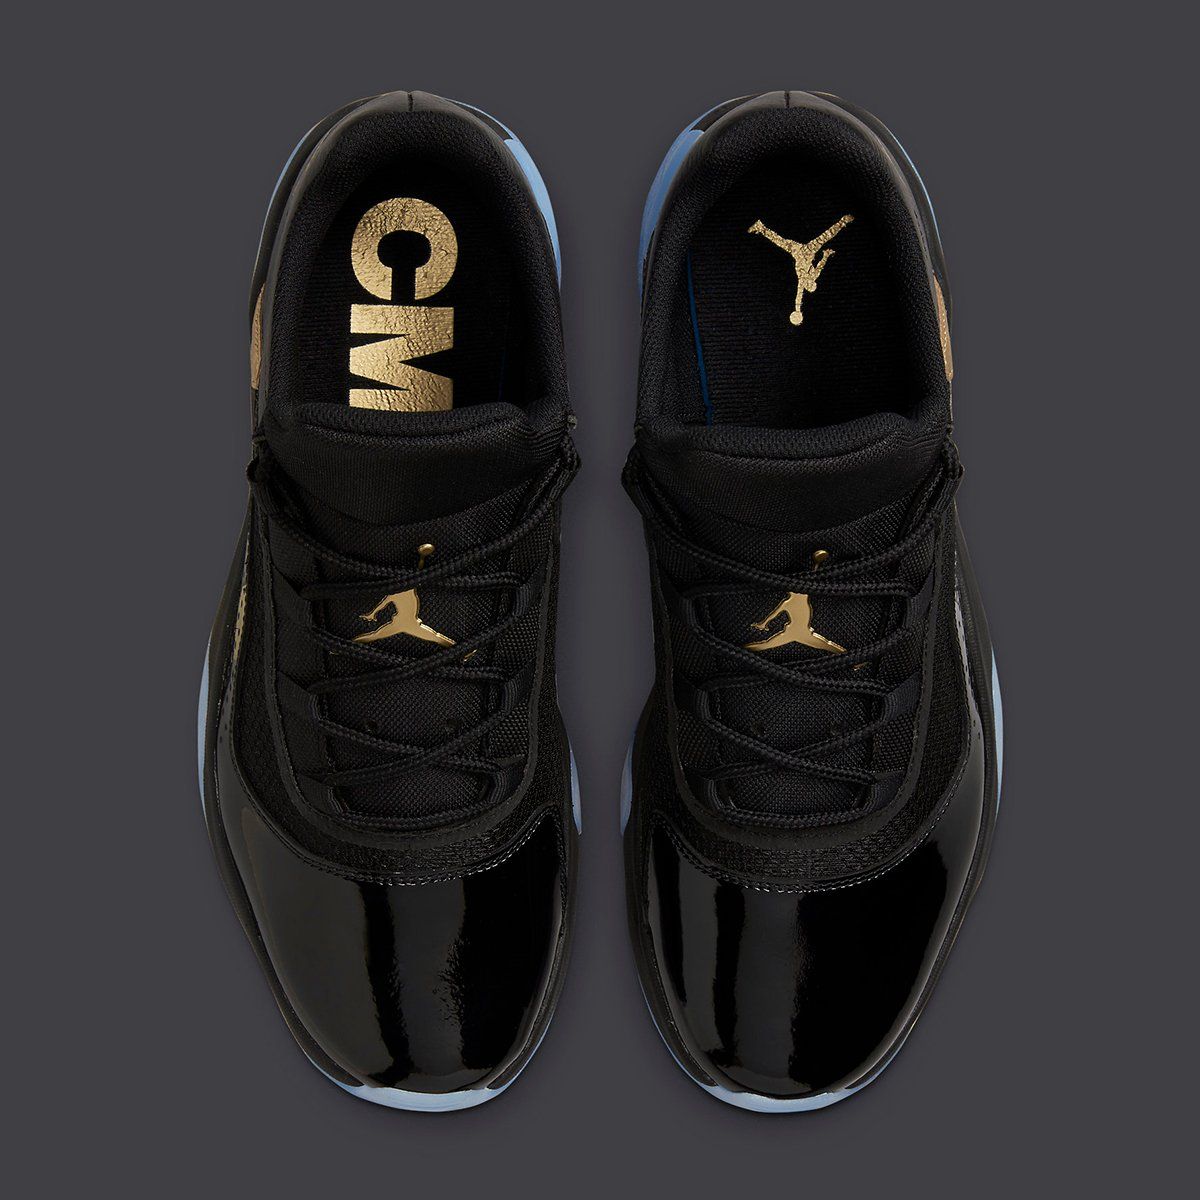 Air Jordan 11 Low CMFT Coming Soon in Black and Gold